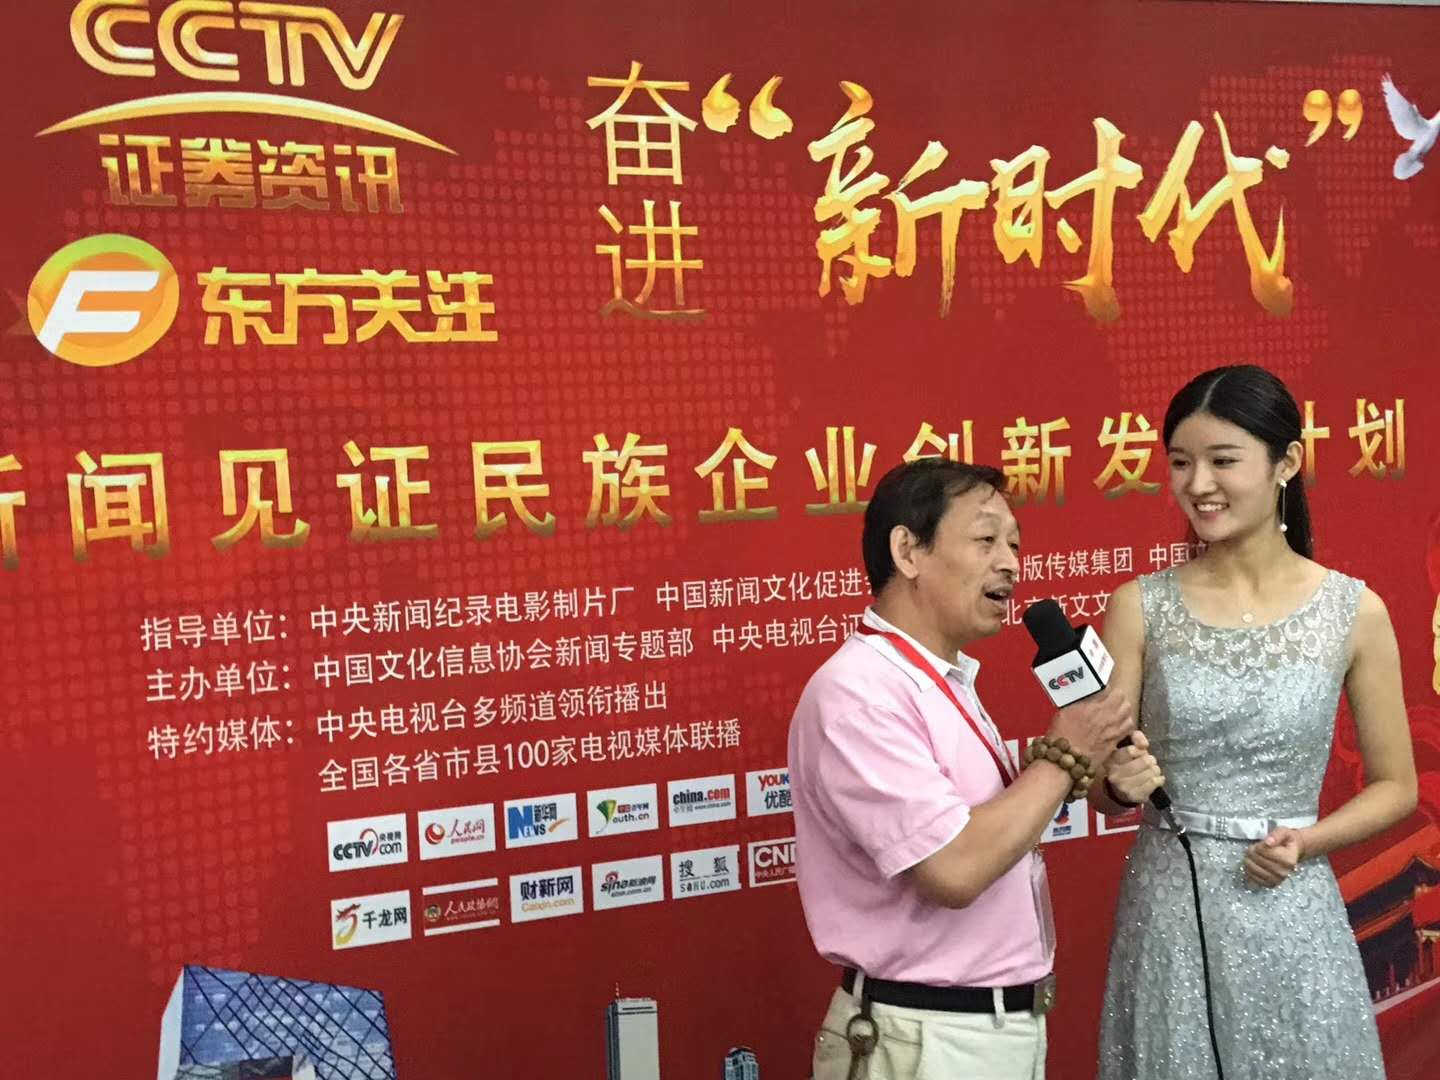 章志斌老师应邀“CCTV证券频道”于苏州大学采访